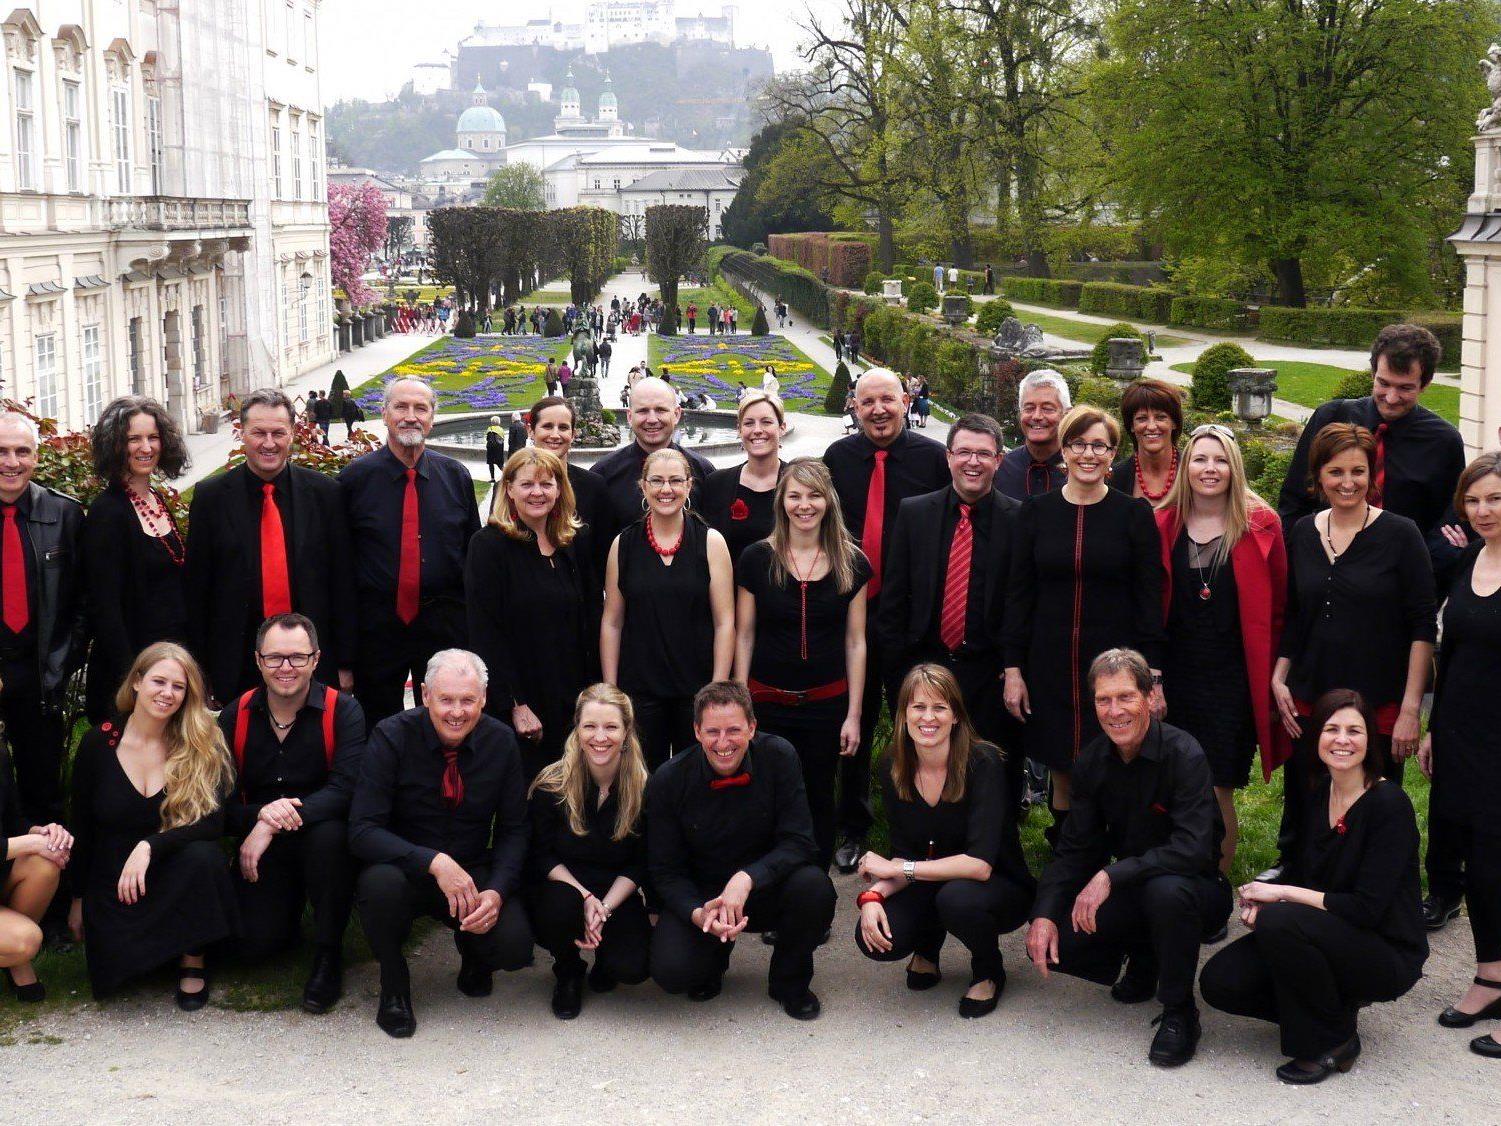 Stolz sind die Mitglieder von "Gioia" auf ihre Teilnahme bei "Österreich singt".